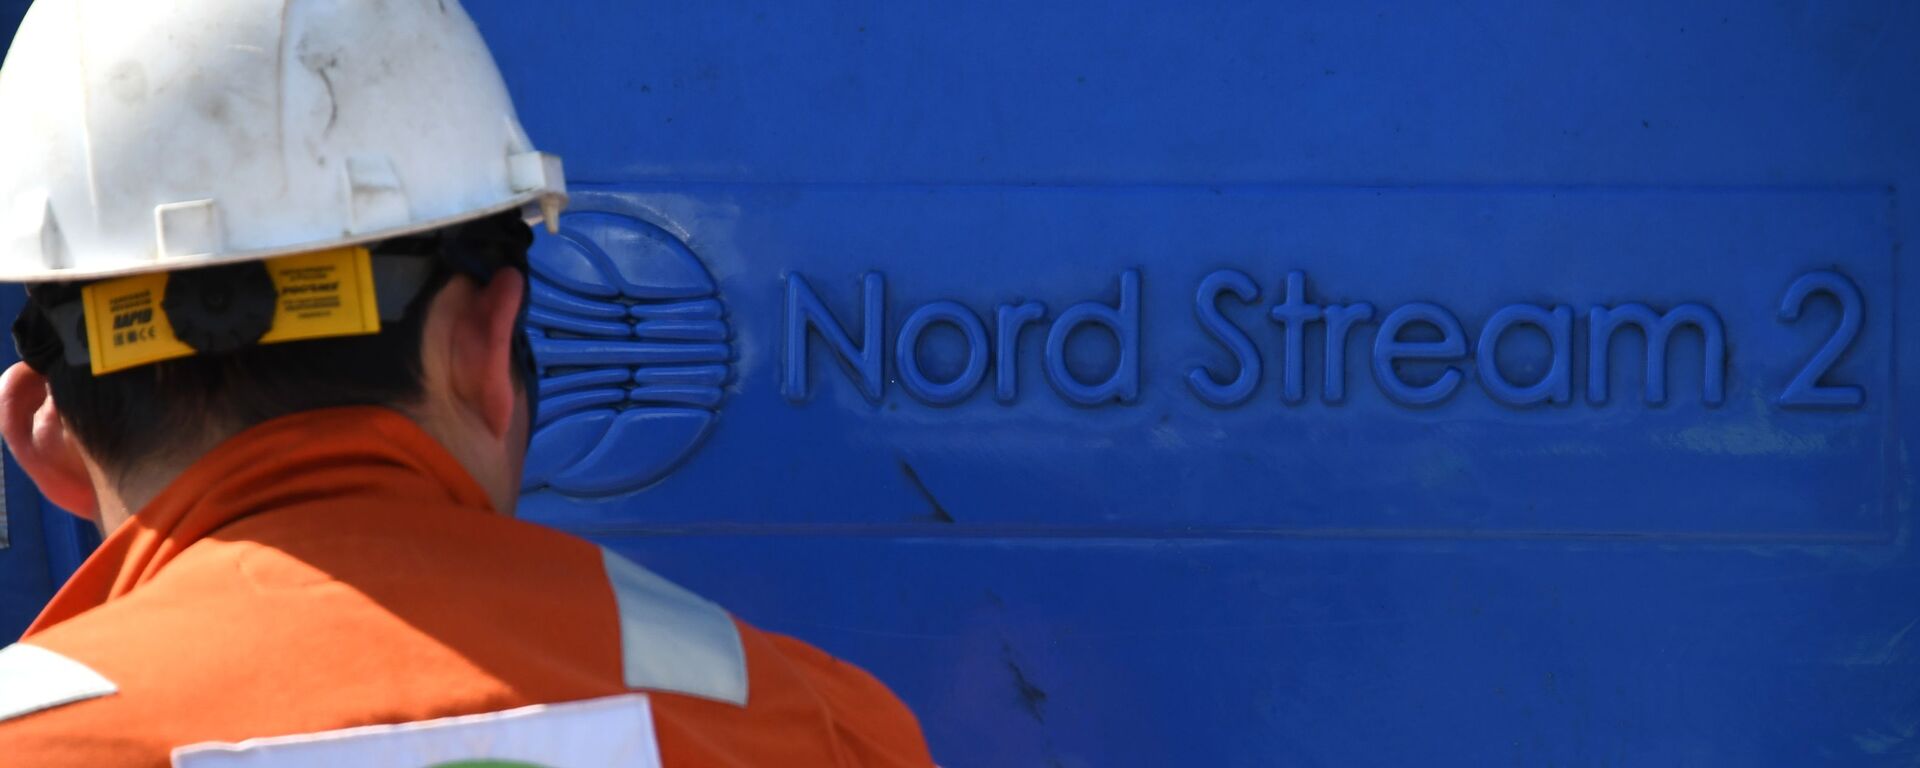 Un empleado invoclucrado en la construcción del gasoducto Nord Stream 2 - Sputnik Mundo, 1920, 08.10.2021